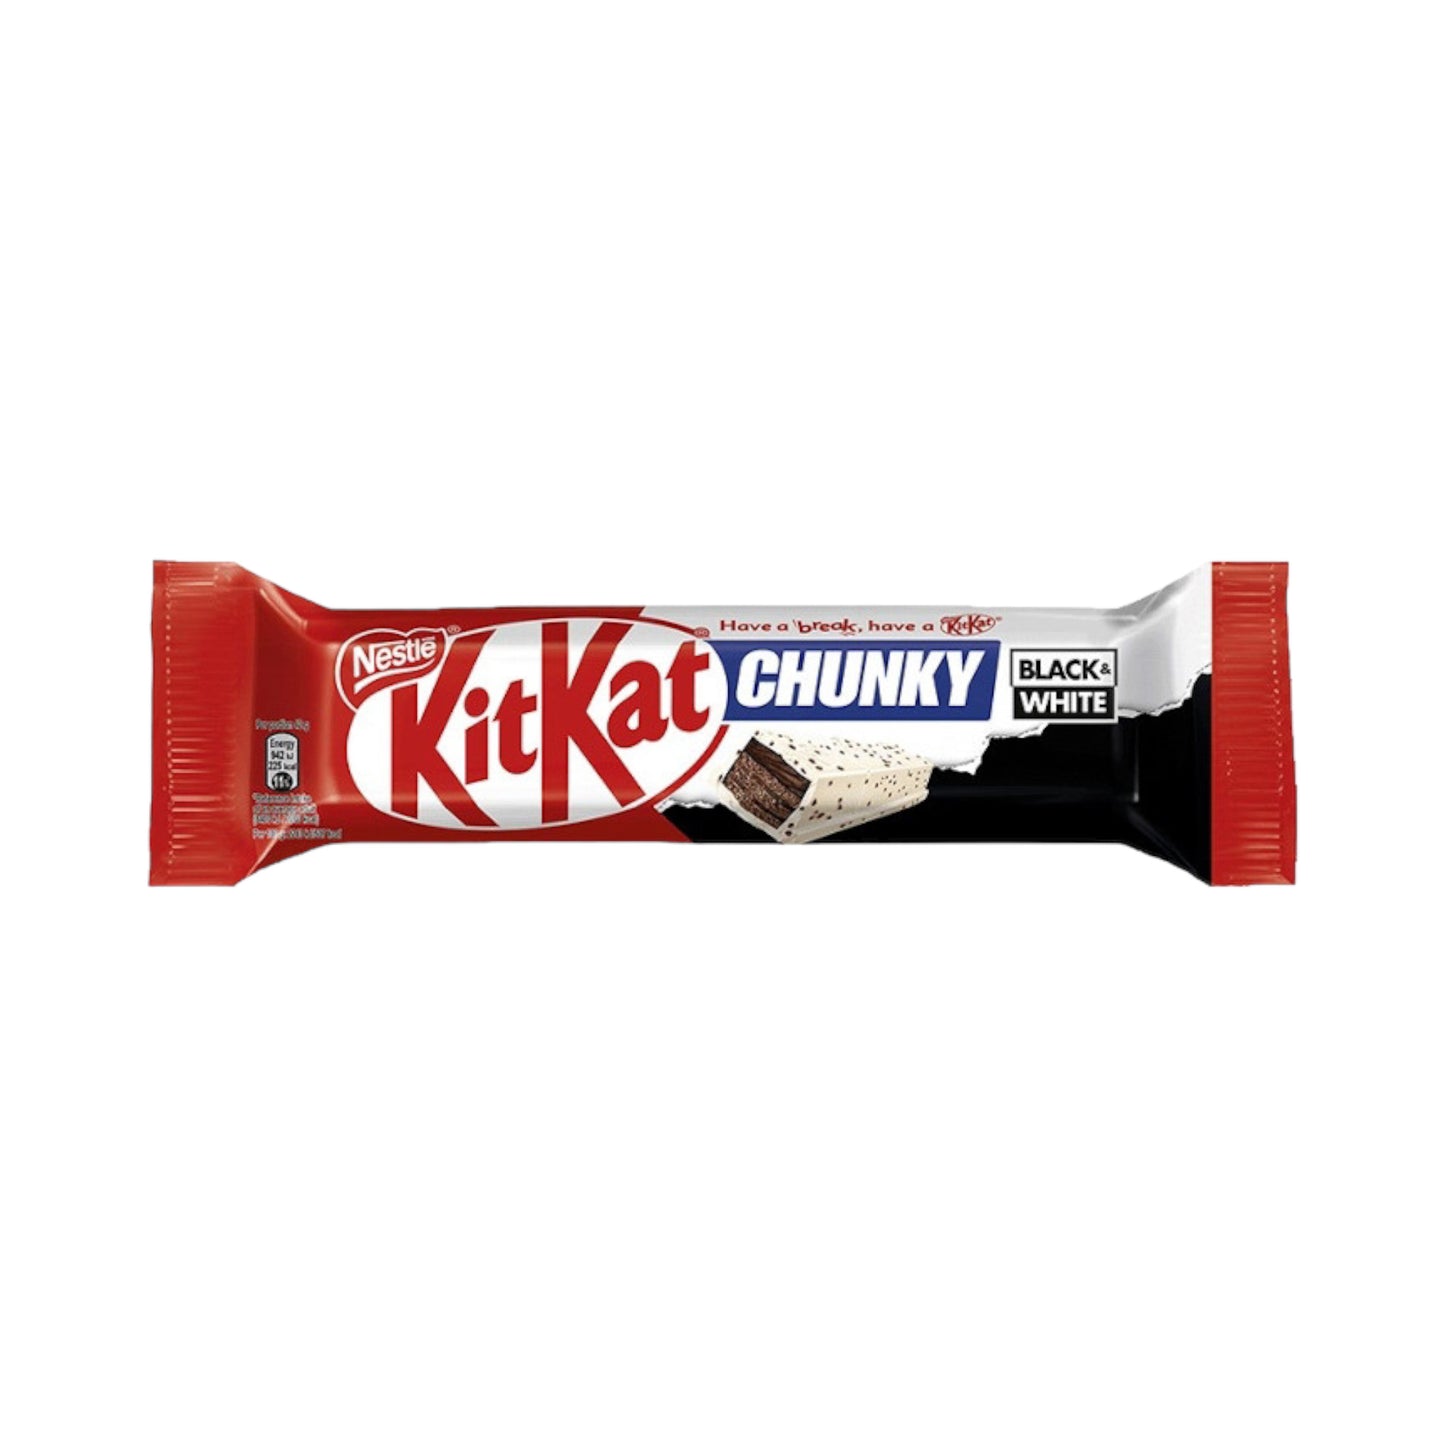 Kit Kat Chunky Black & White - 42G - (EU)